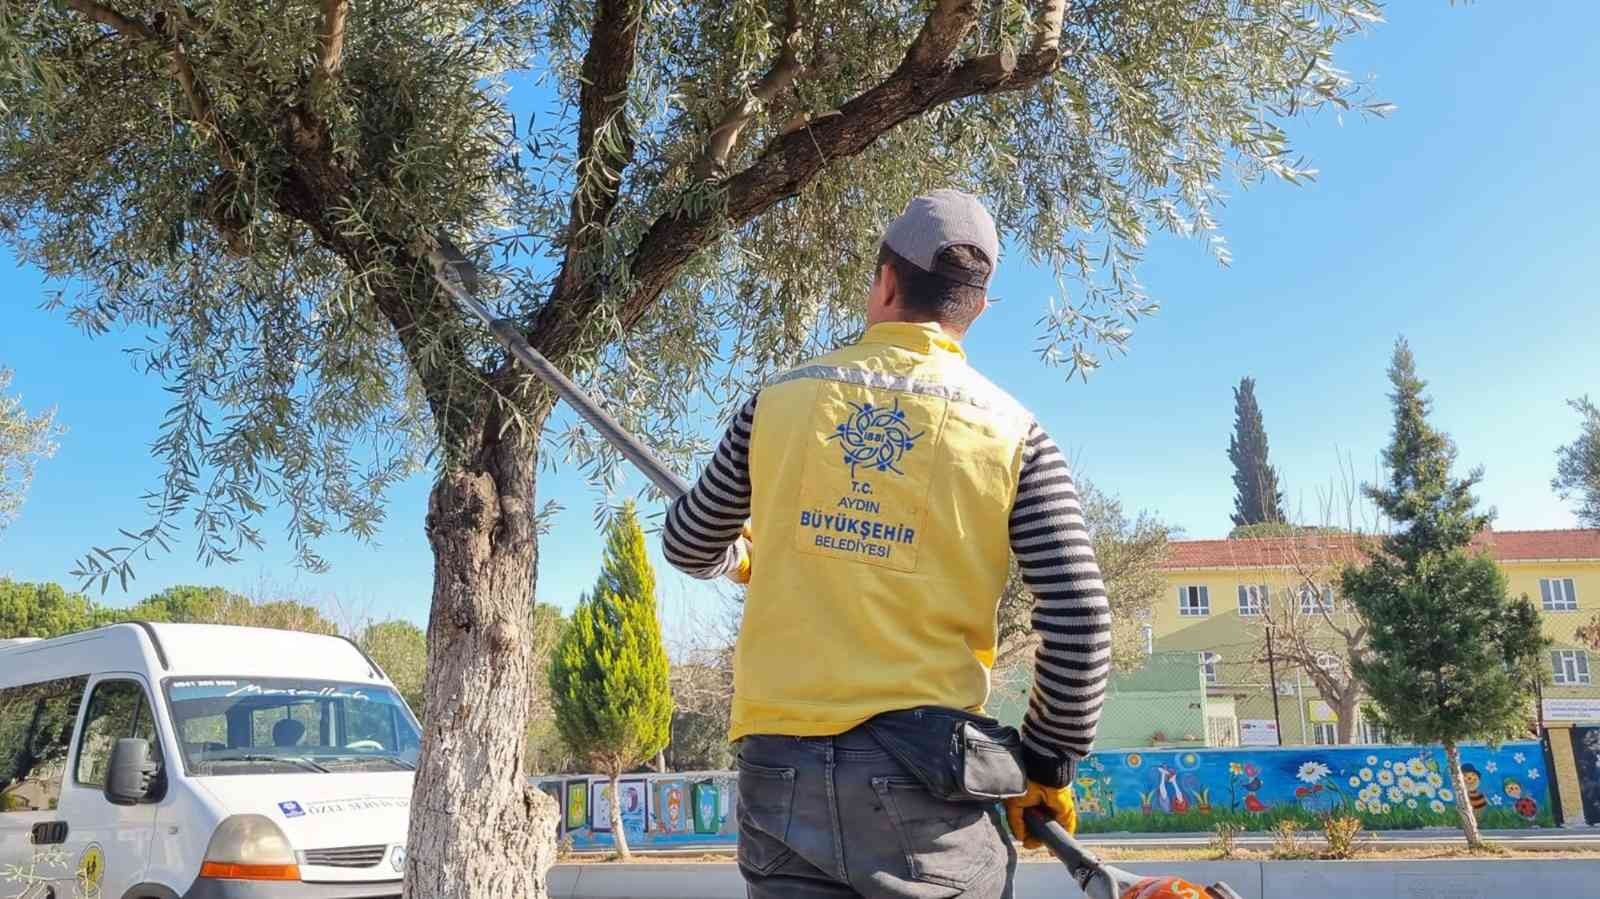 Aydın Büyükşehir Belediyesi Karacasu’daki çalışmalarını hız kesmeden sürdürüyor